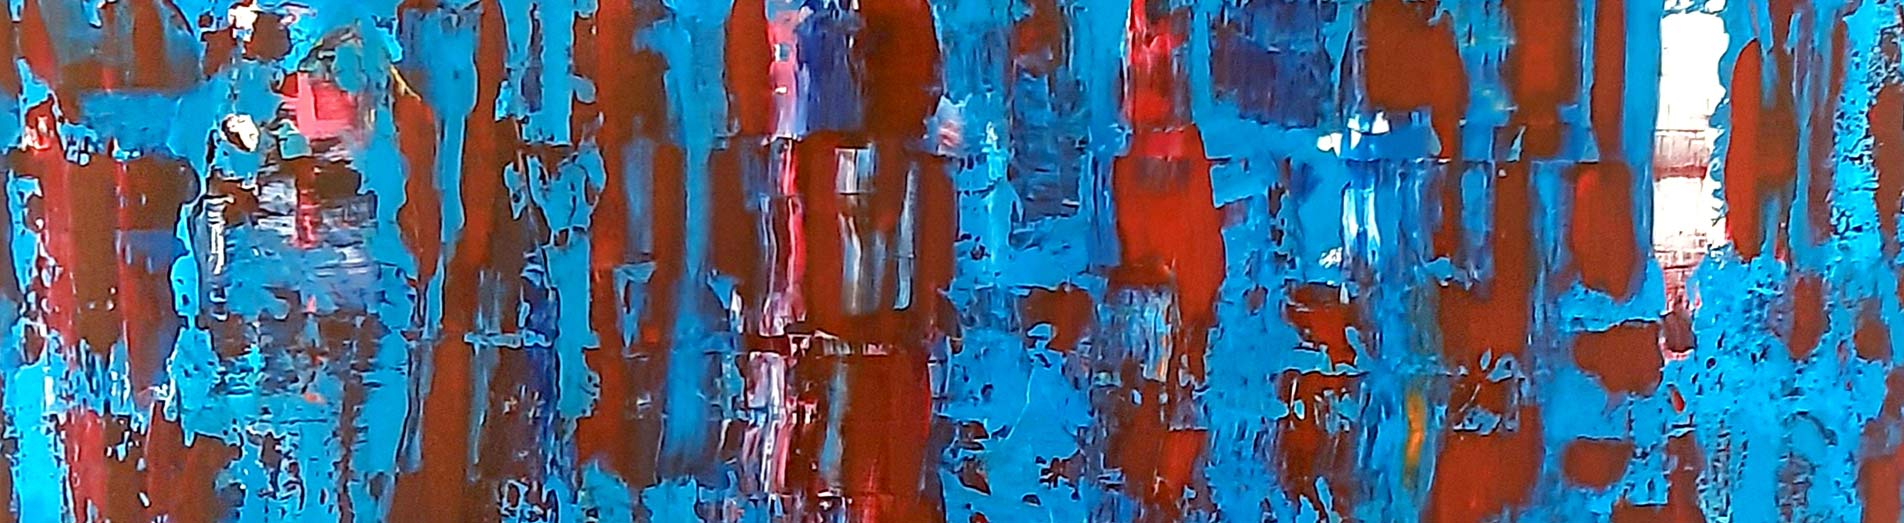 abstract painter Patrick joosten